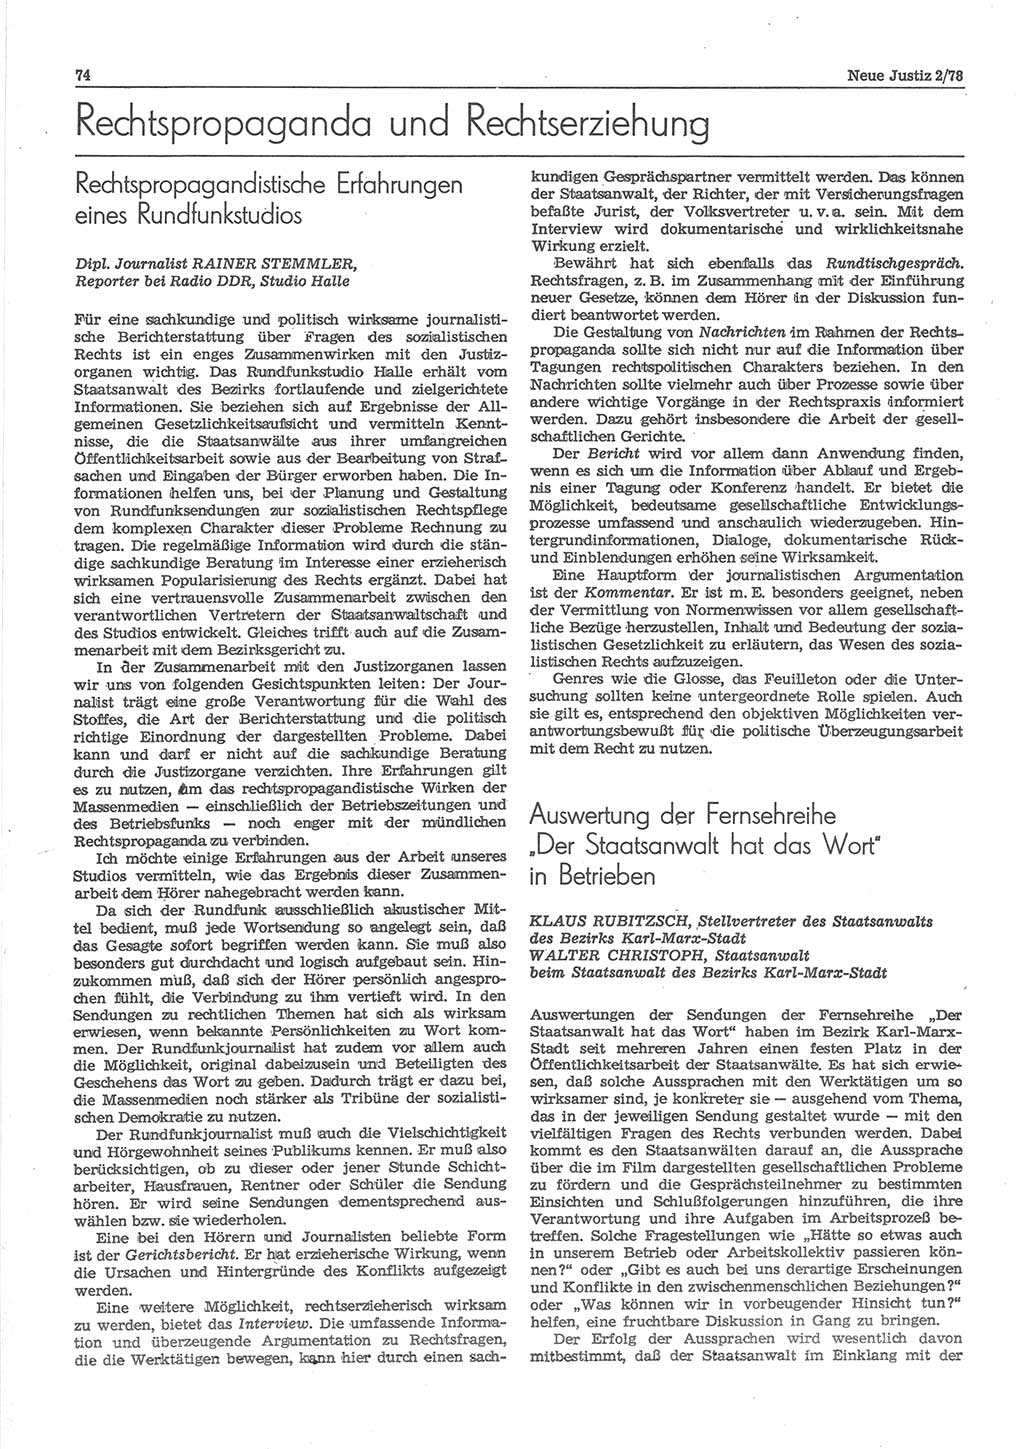 Neue Justiz (NJ), Zeitschrift für sozialistisches Recht und Gesetzlichkeit [Deutsche Demokratische Republik (DDR)], 32. Jahrgang 1978, Seite 74 (NJ DDR 1978, S. 74)